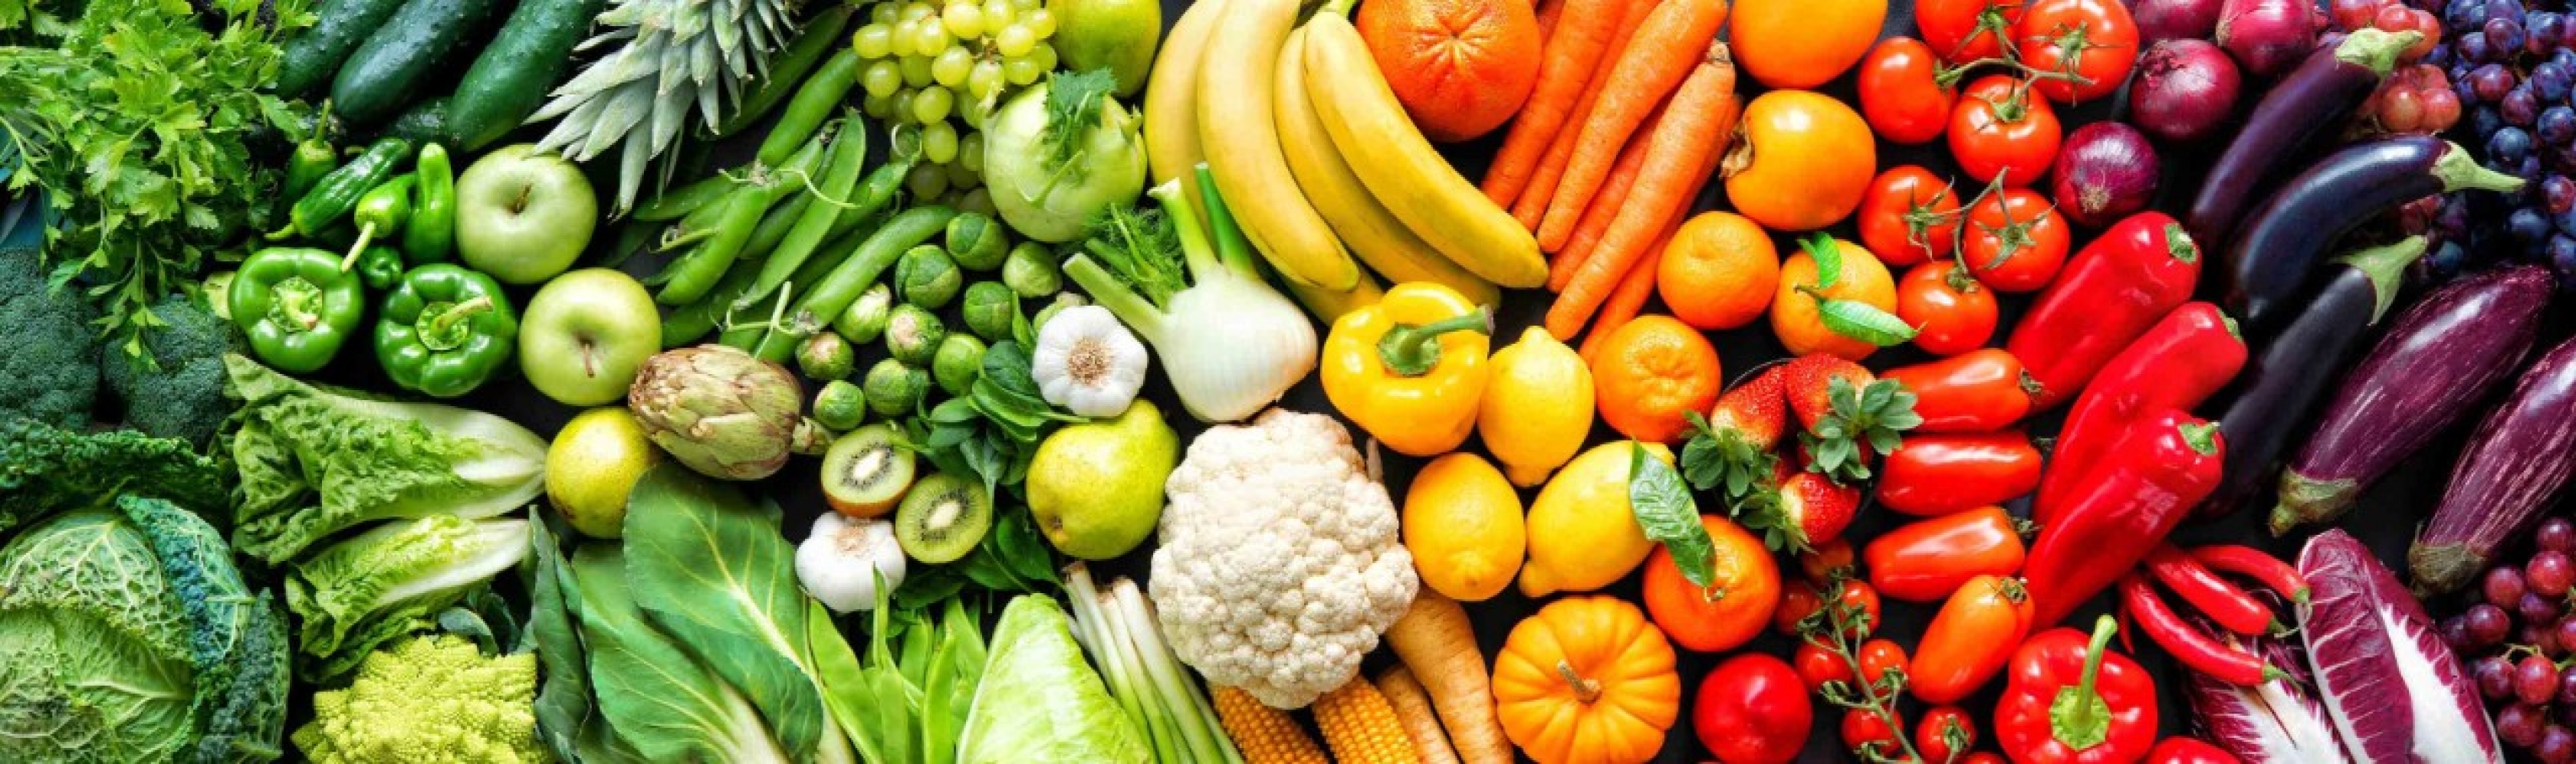 Vivre plus sainement? Une bonne hygiène de vie passe par une alimentation saine. Les fruits et légumes frais, déclinés dans toute leur gamme de formes et de couleurs, nous ouvrent l’appétit.